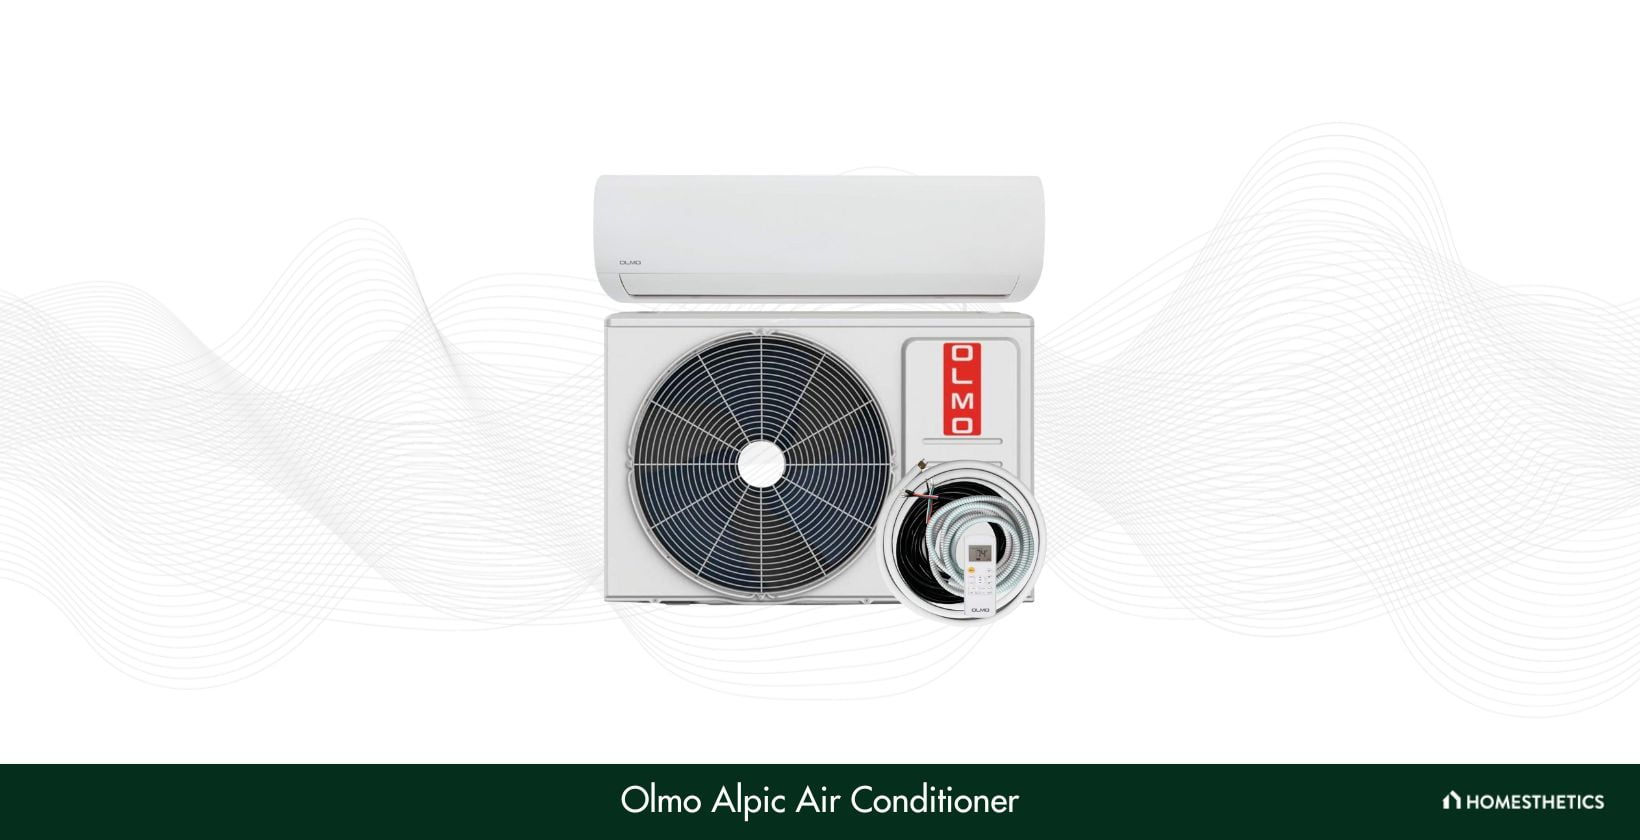 Olmo Alpic Air Conditioner